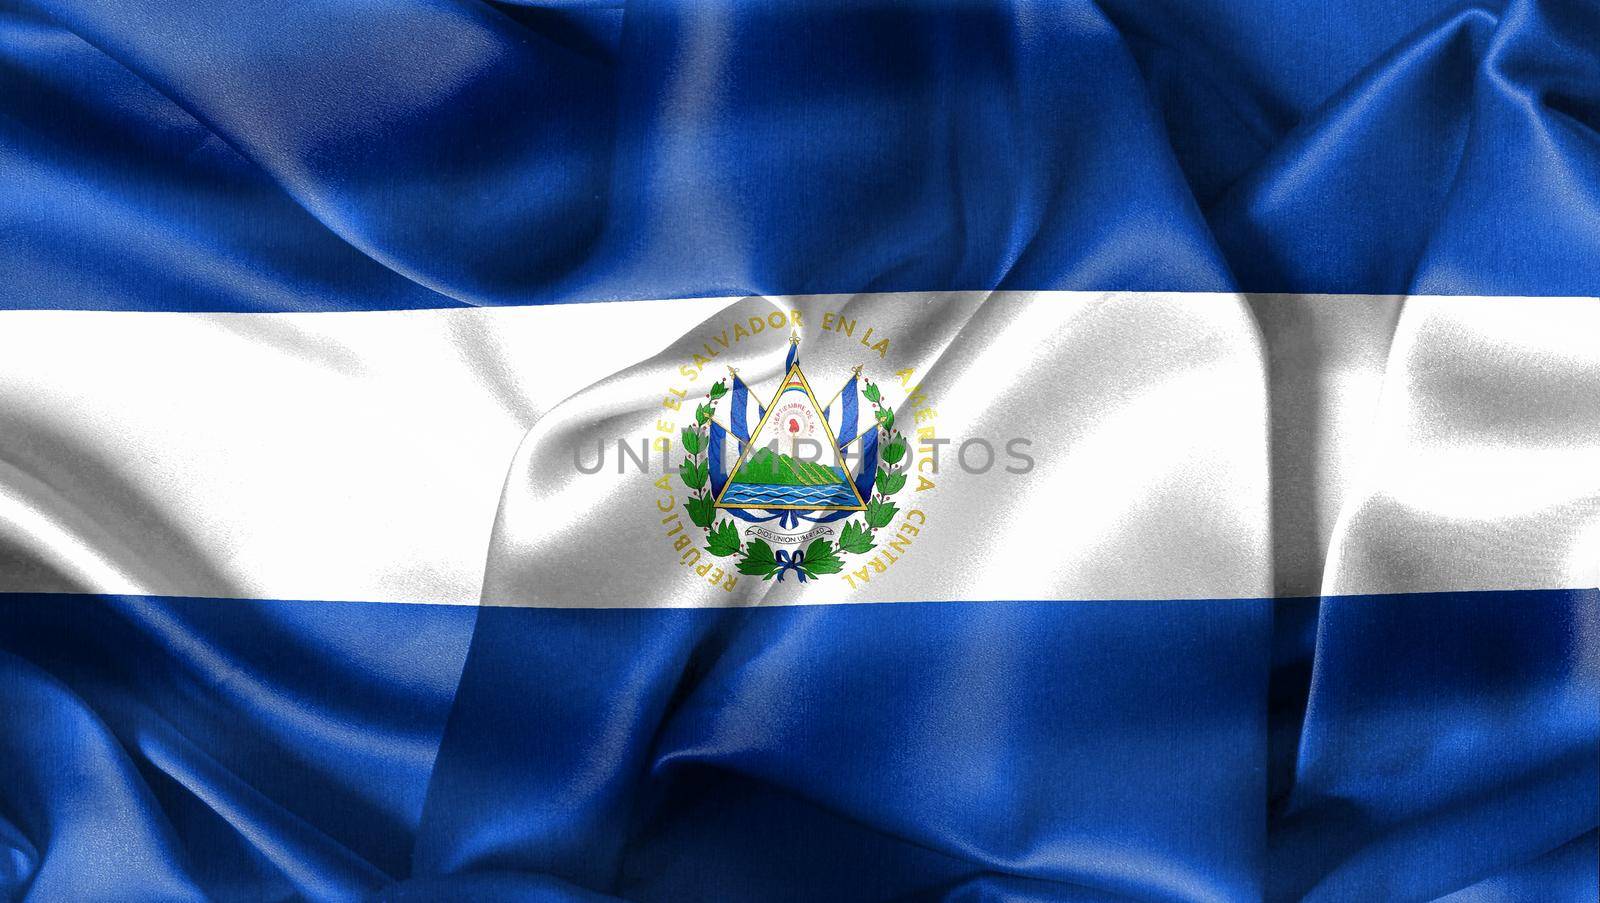 3D-Illustration of a El Salvador flag - realistic waving fabric flag.